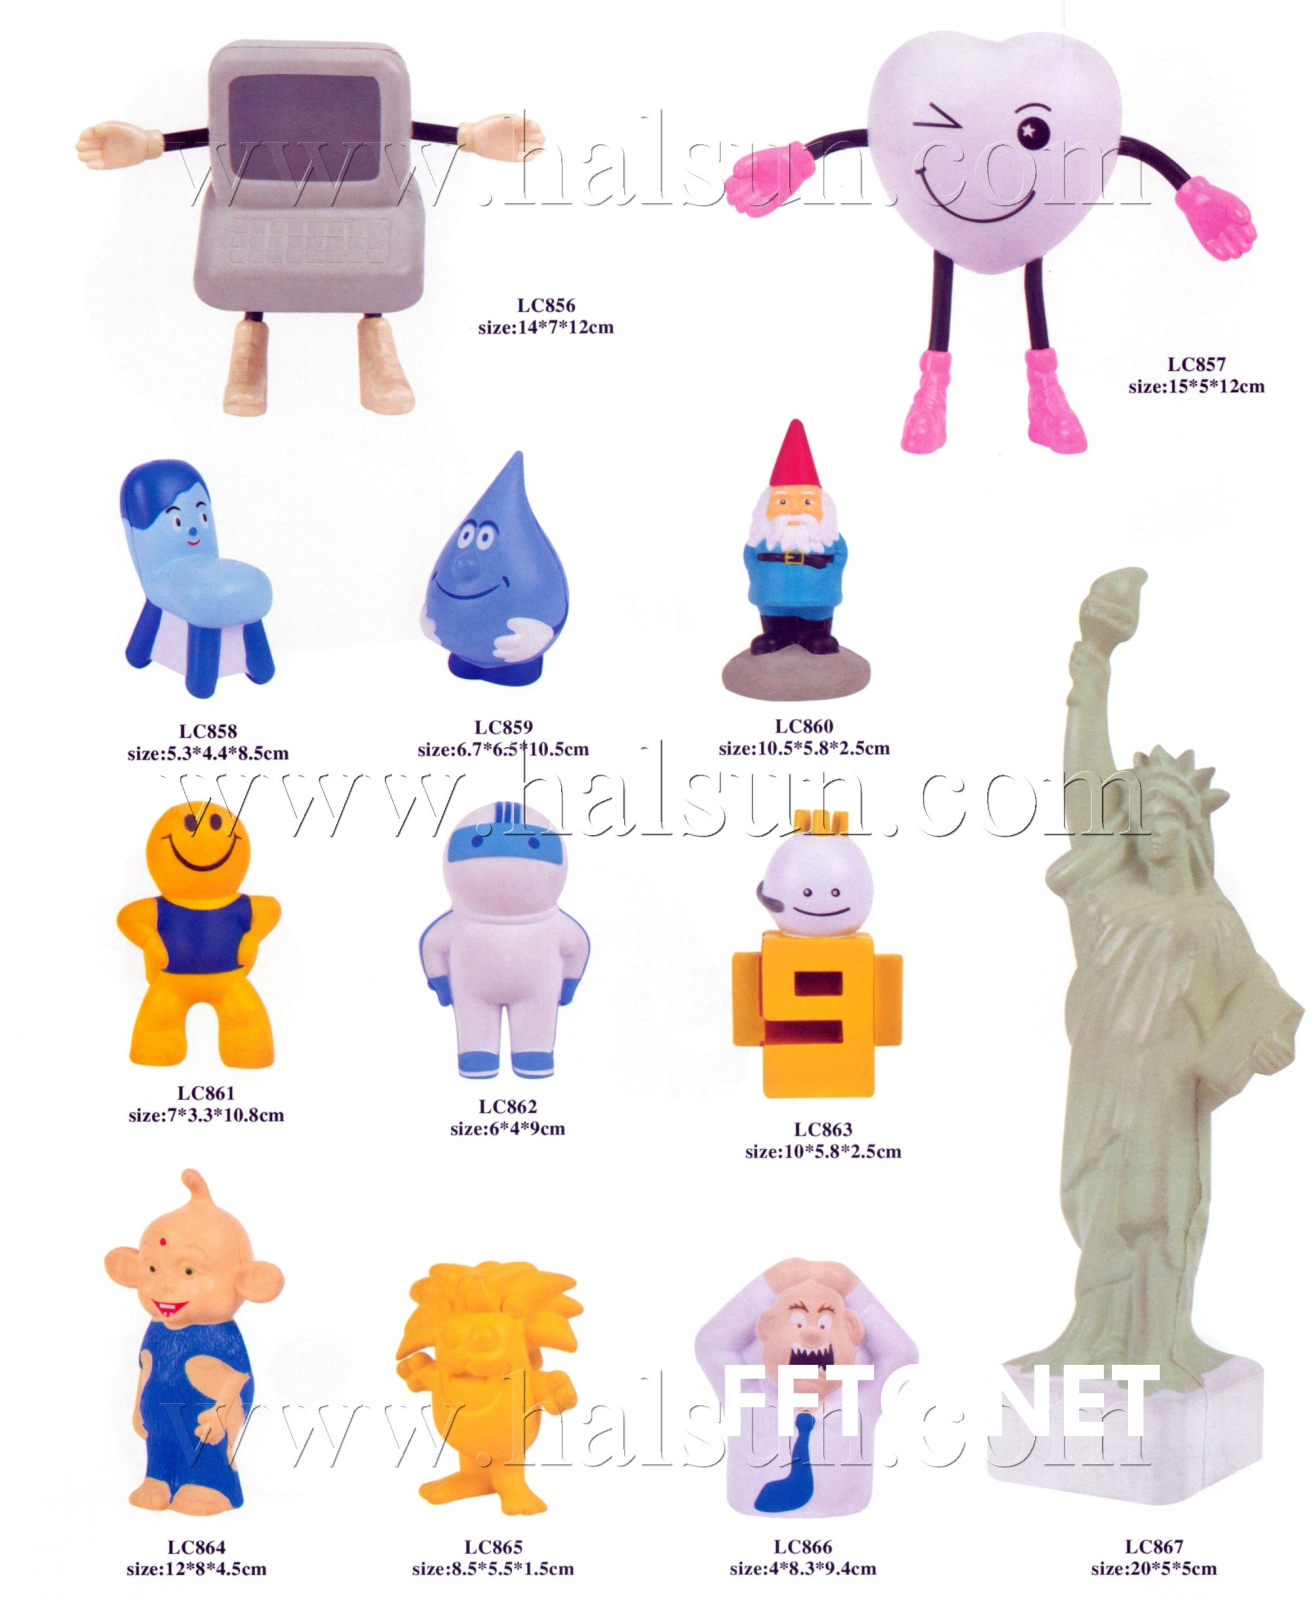 pu-stress-balls_2015_06_12_14_34_35-figurine-stress-toys-statue-of-liberty-pu-toys